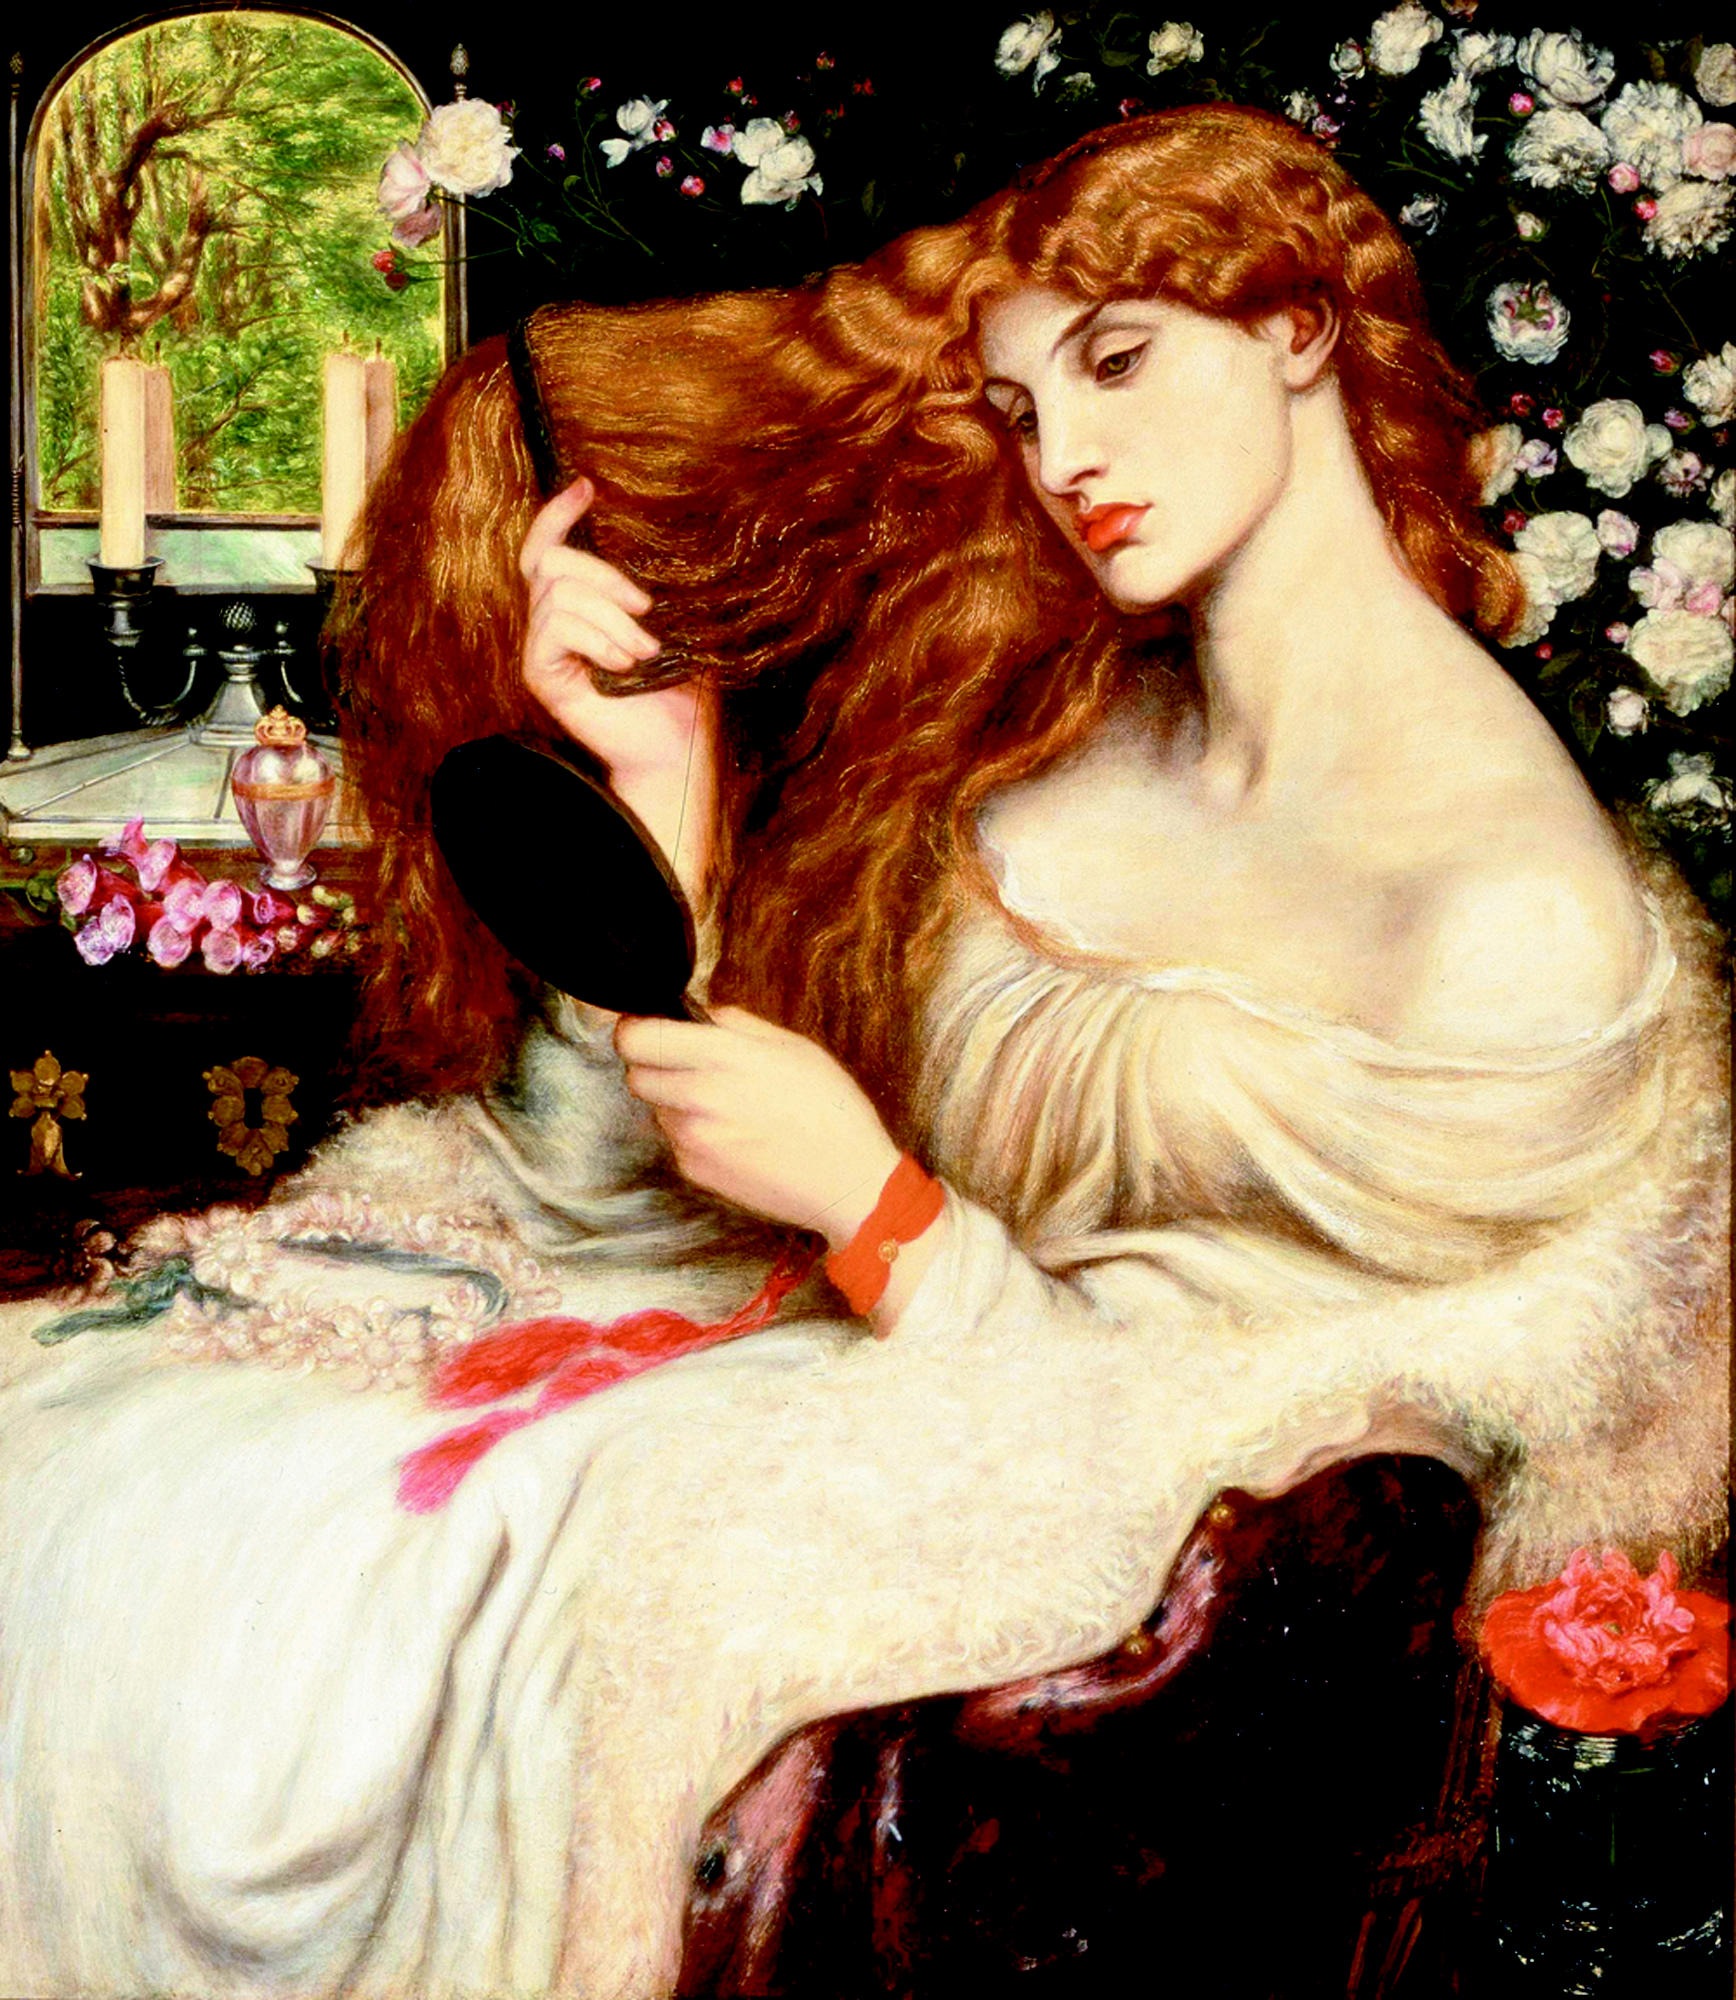 莉莉丝夫人 by 但丁 罗塞蒂 - 1866–68 - 96.5 cm × 85.1 cm 特拉华艺术博物馆